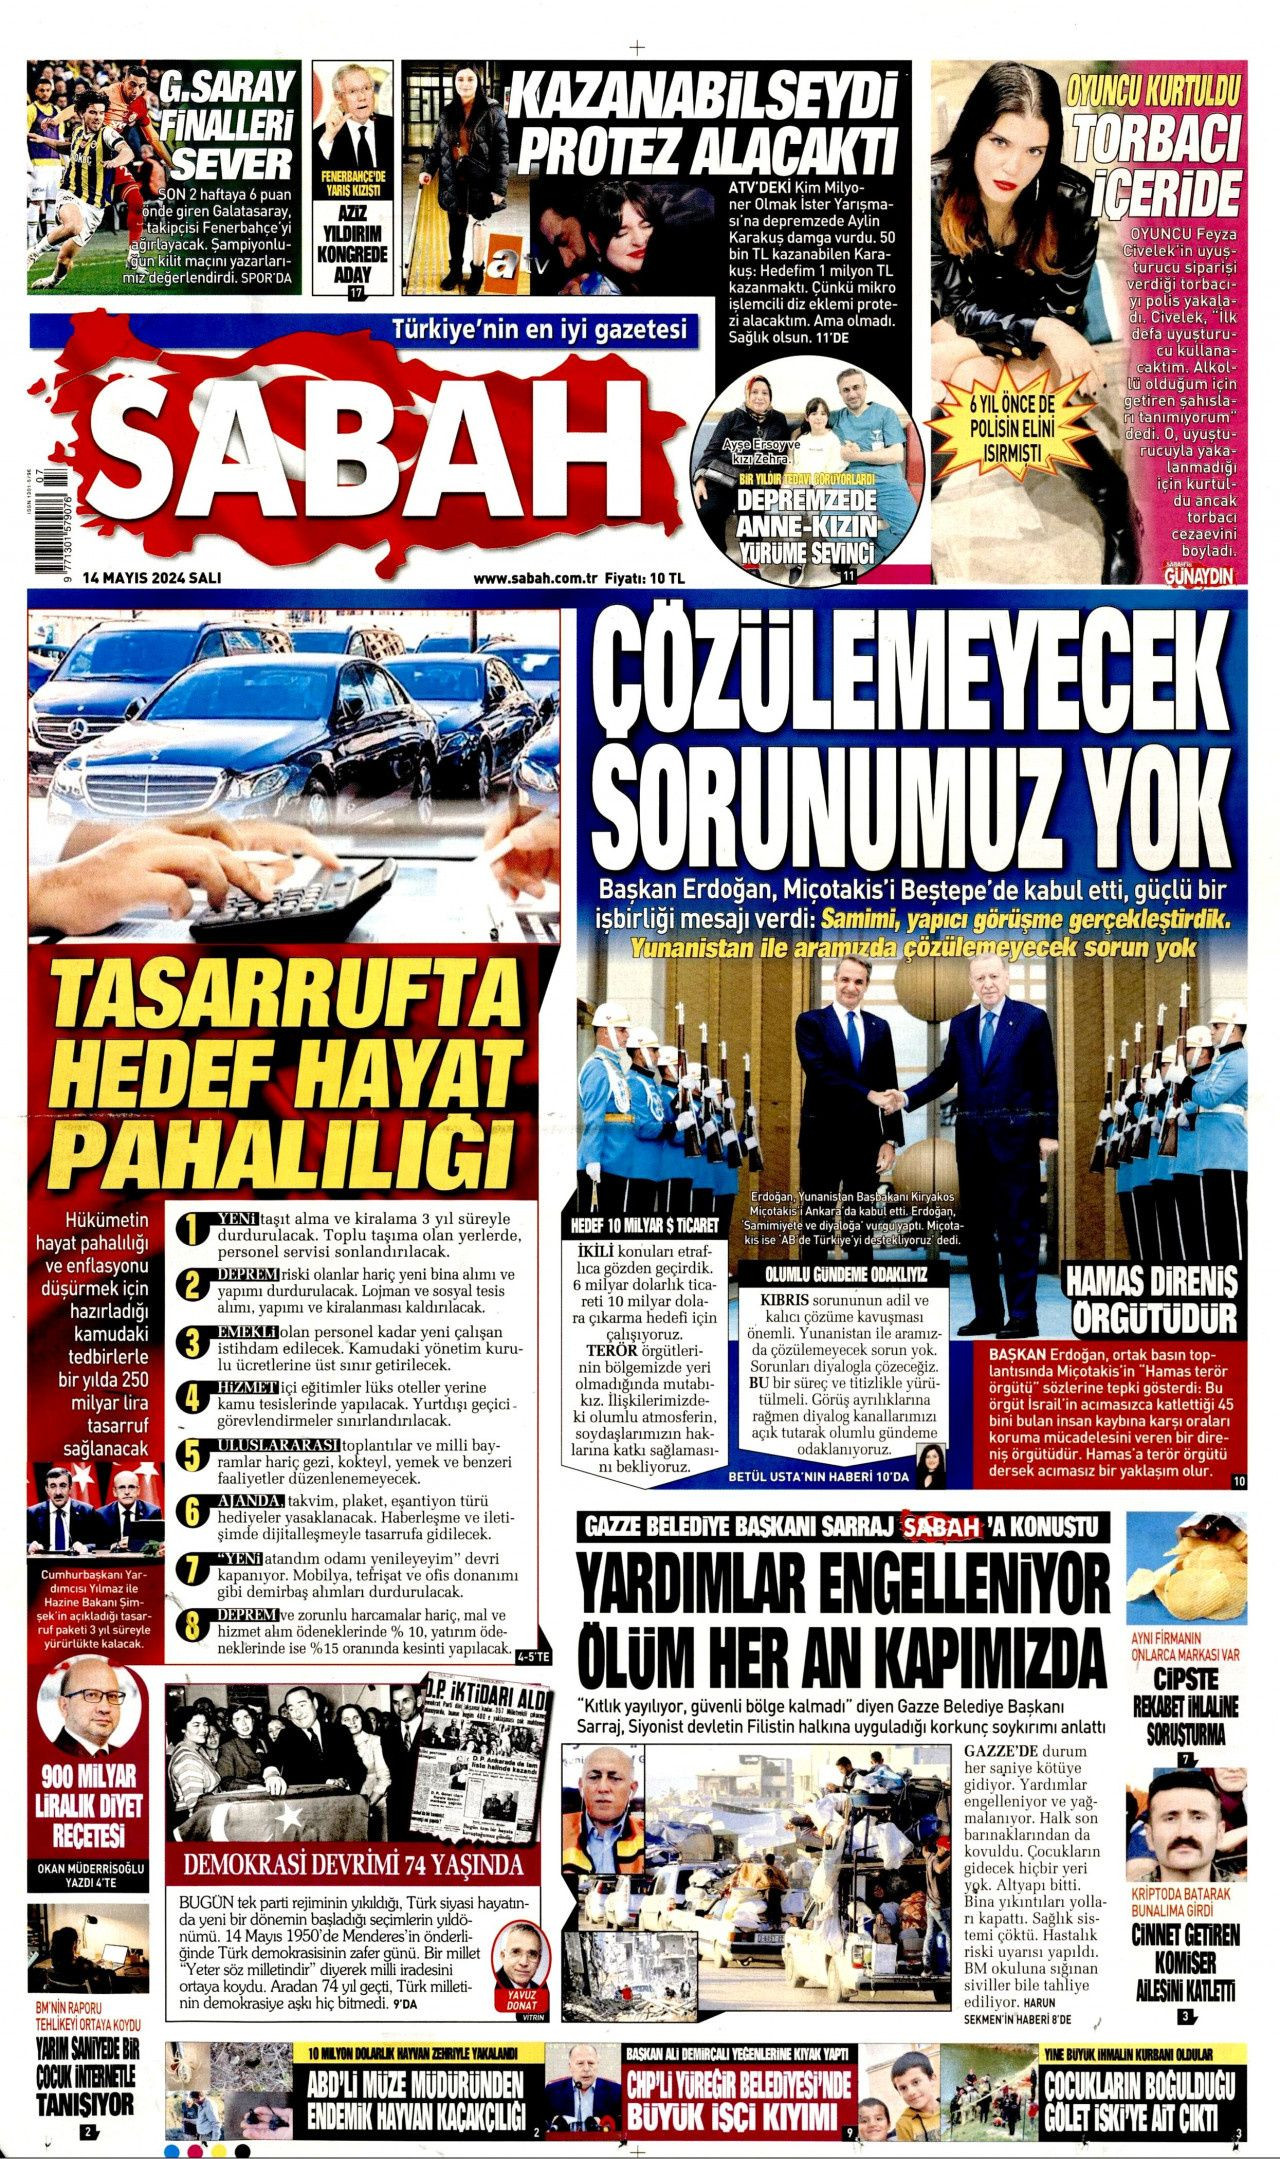 Kamuda Tasarruf Paketi gazete manşetlerinde: 'Kuzu postunda kurt' - Sayfa 2